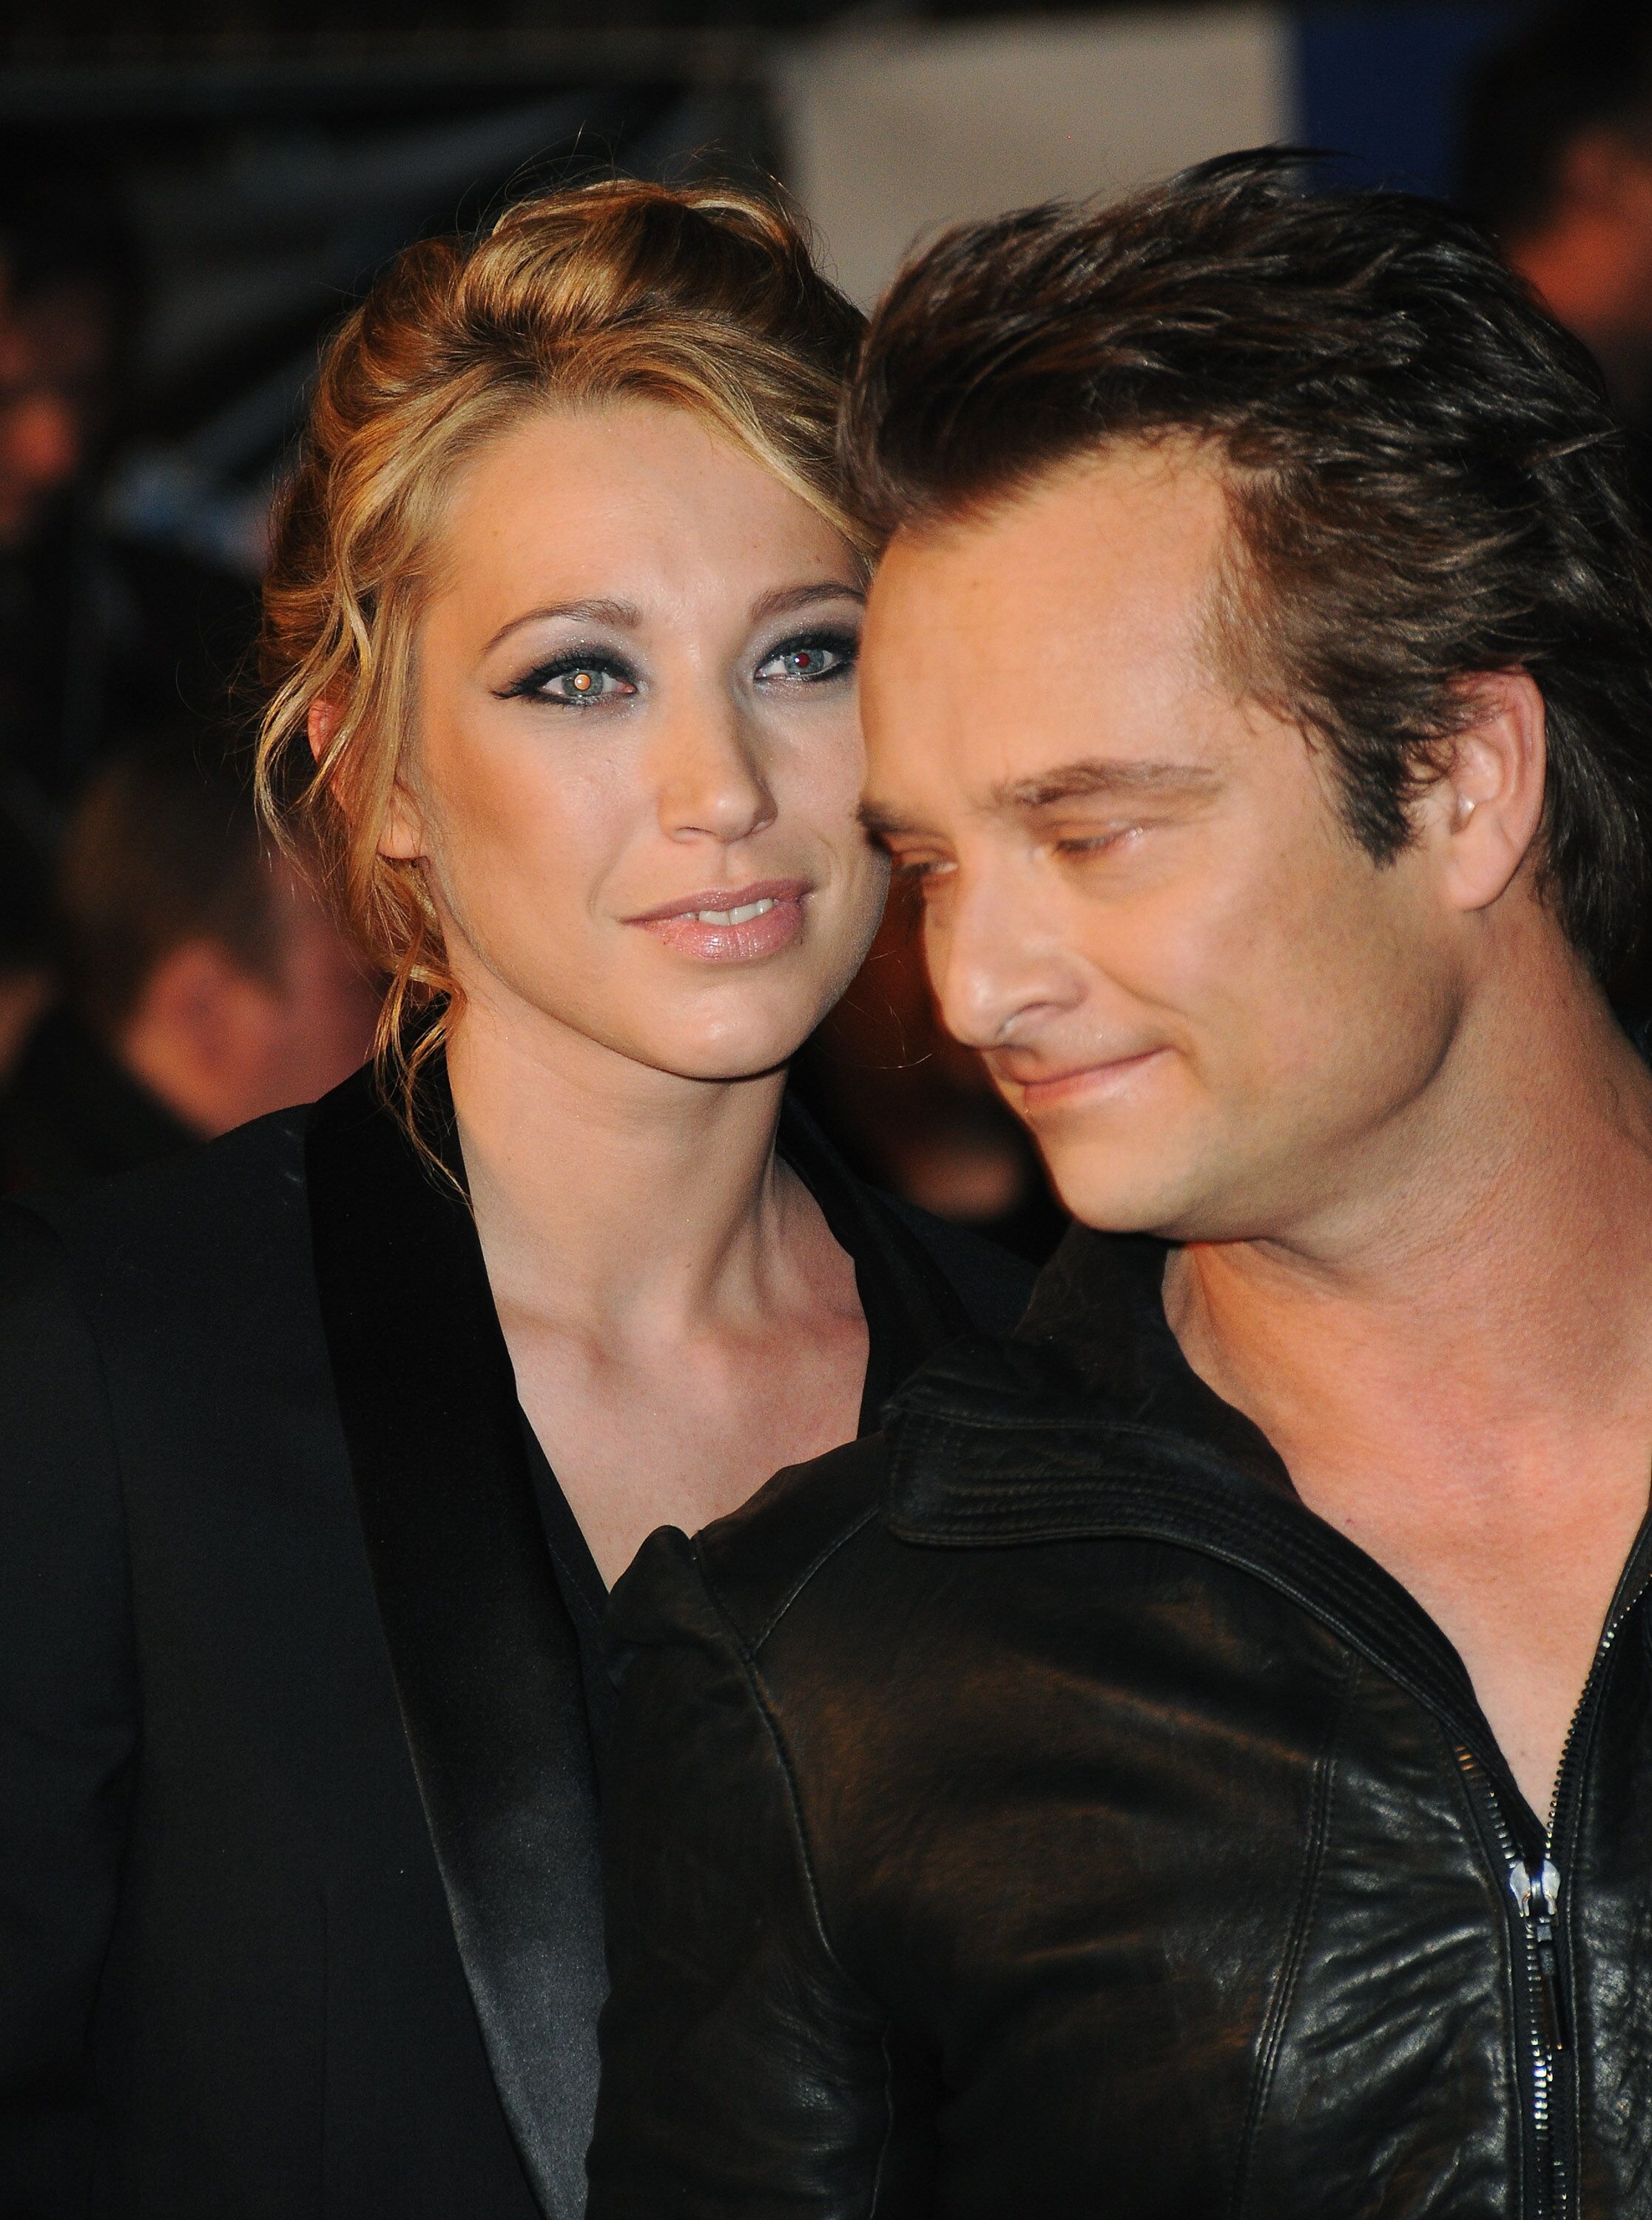  David Hallyday et Laura Smet participent aux NRJ Music Awards 2010 au Palais des Festivals  à Cannes. | Gatty Images